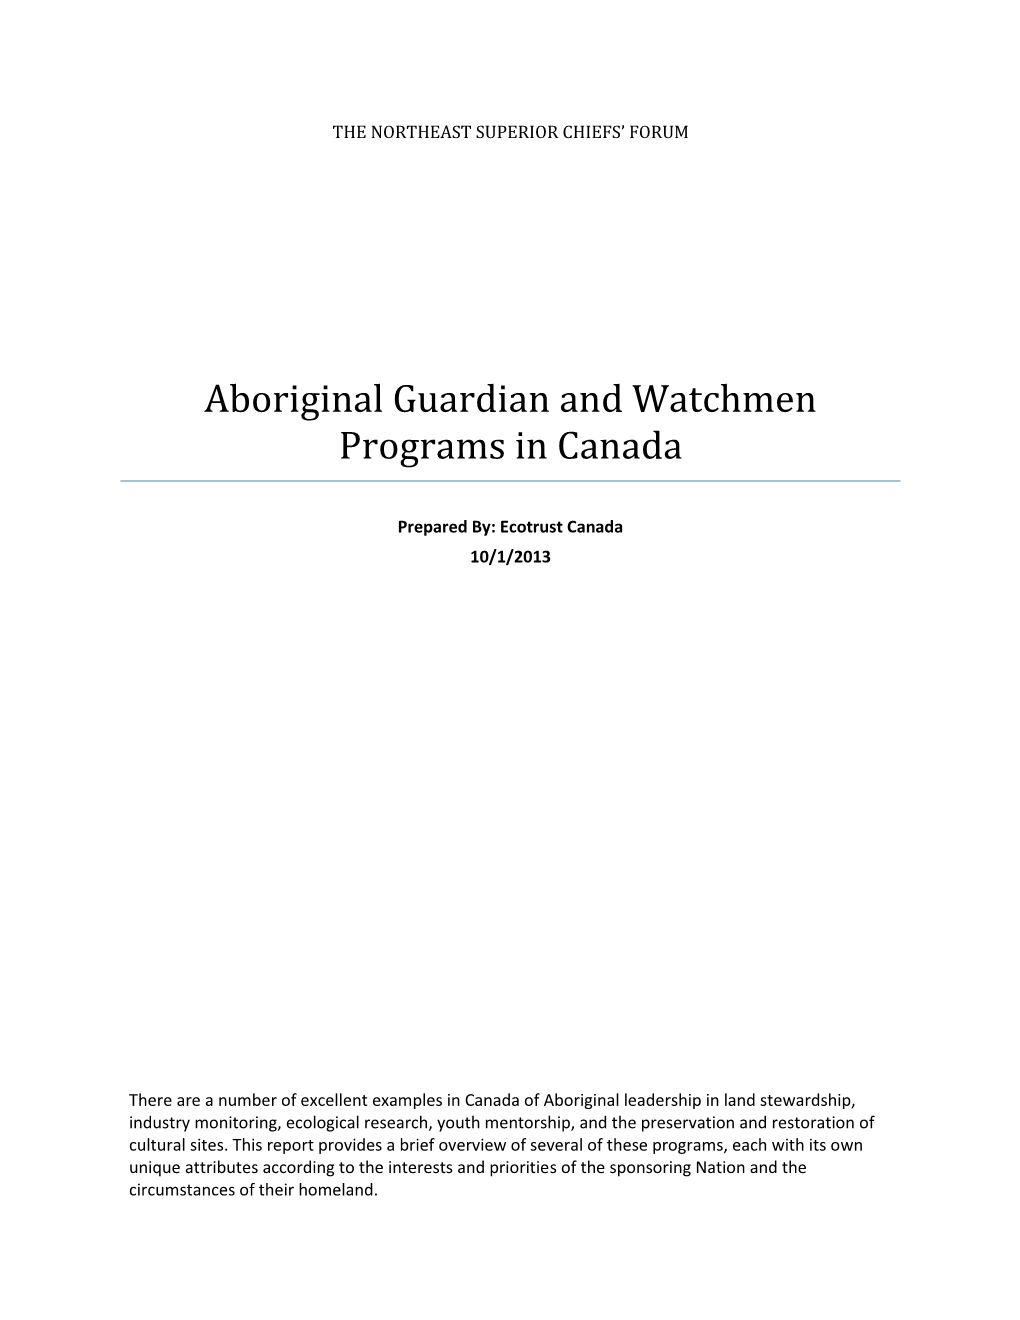 Aboriginal Guardian and Watchmen Programs in Canada